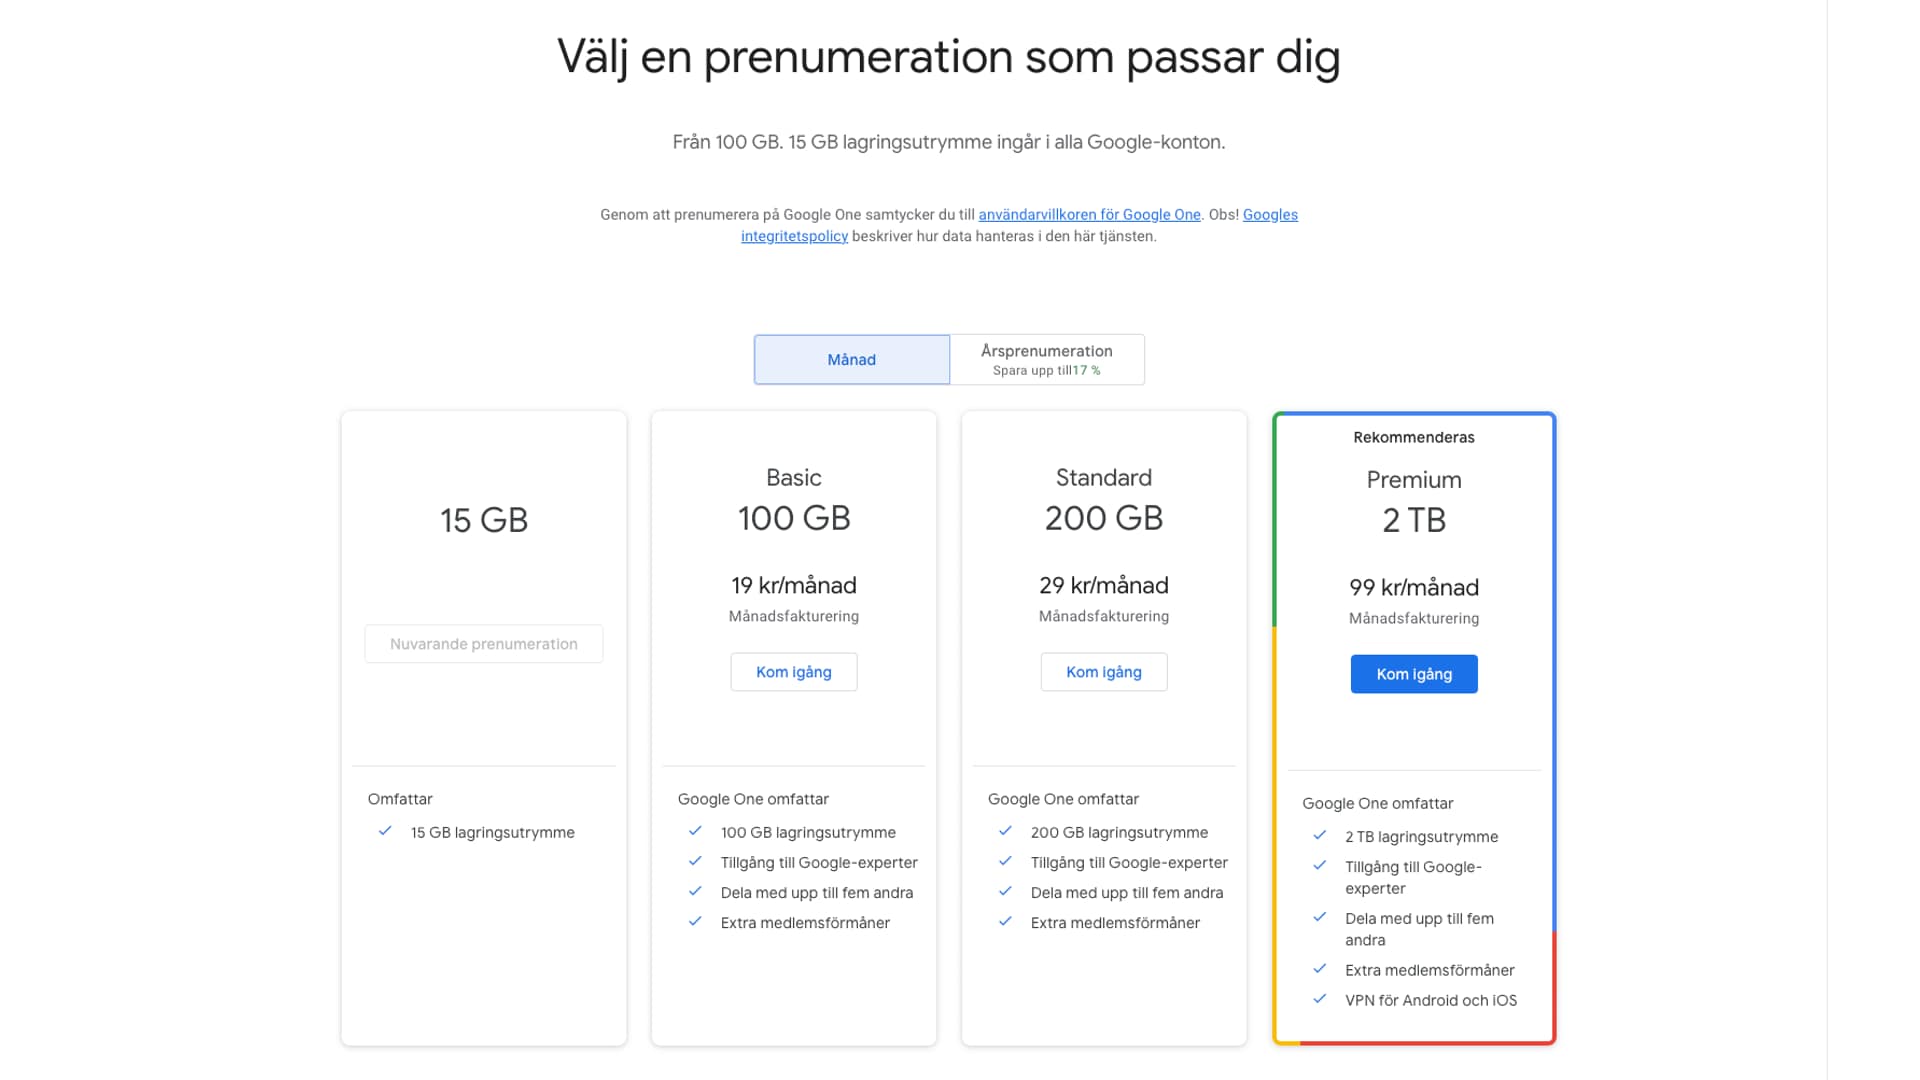 Google One VPN er inkludert hvis du betaler for 2TB lagringsplass hos Google